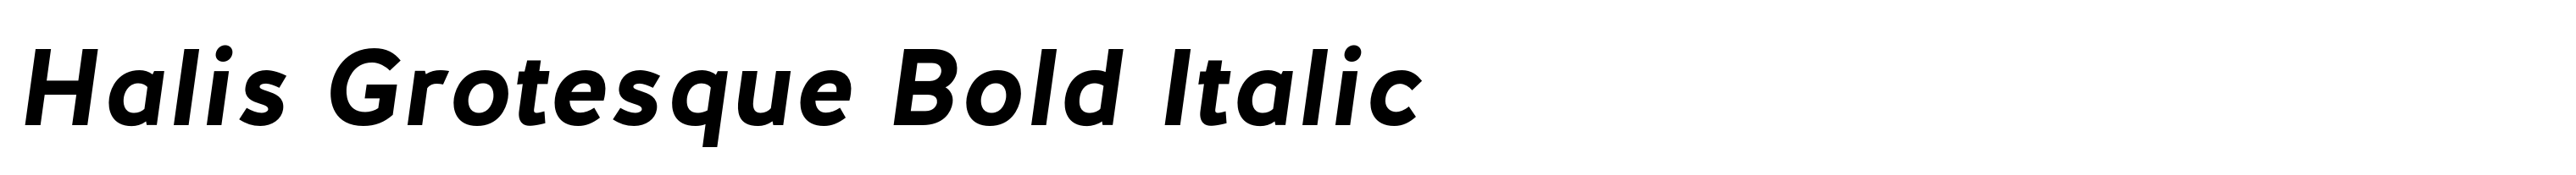 Halis Grotesque Bold Italic